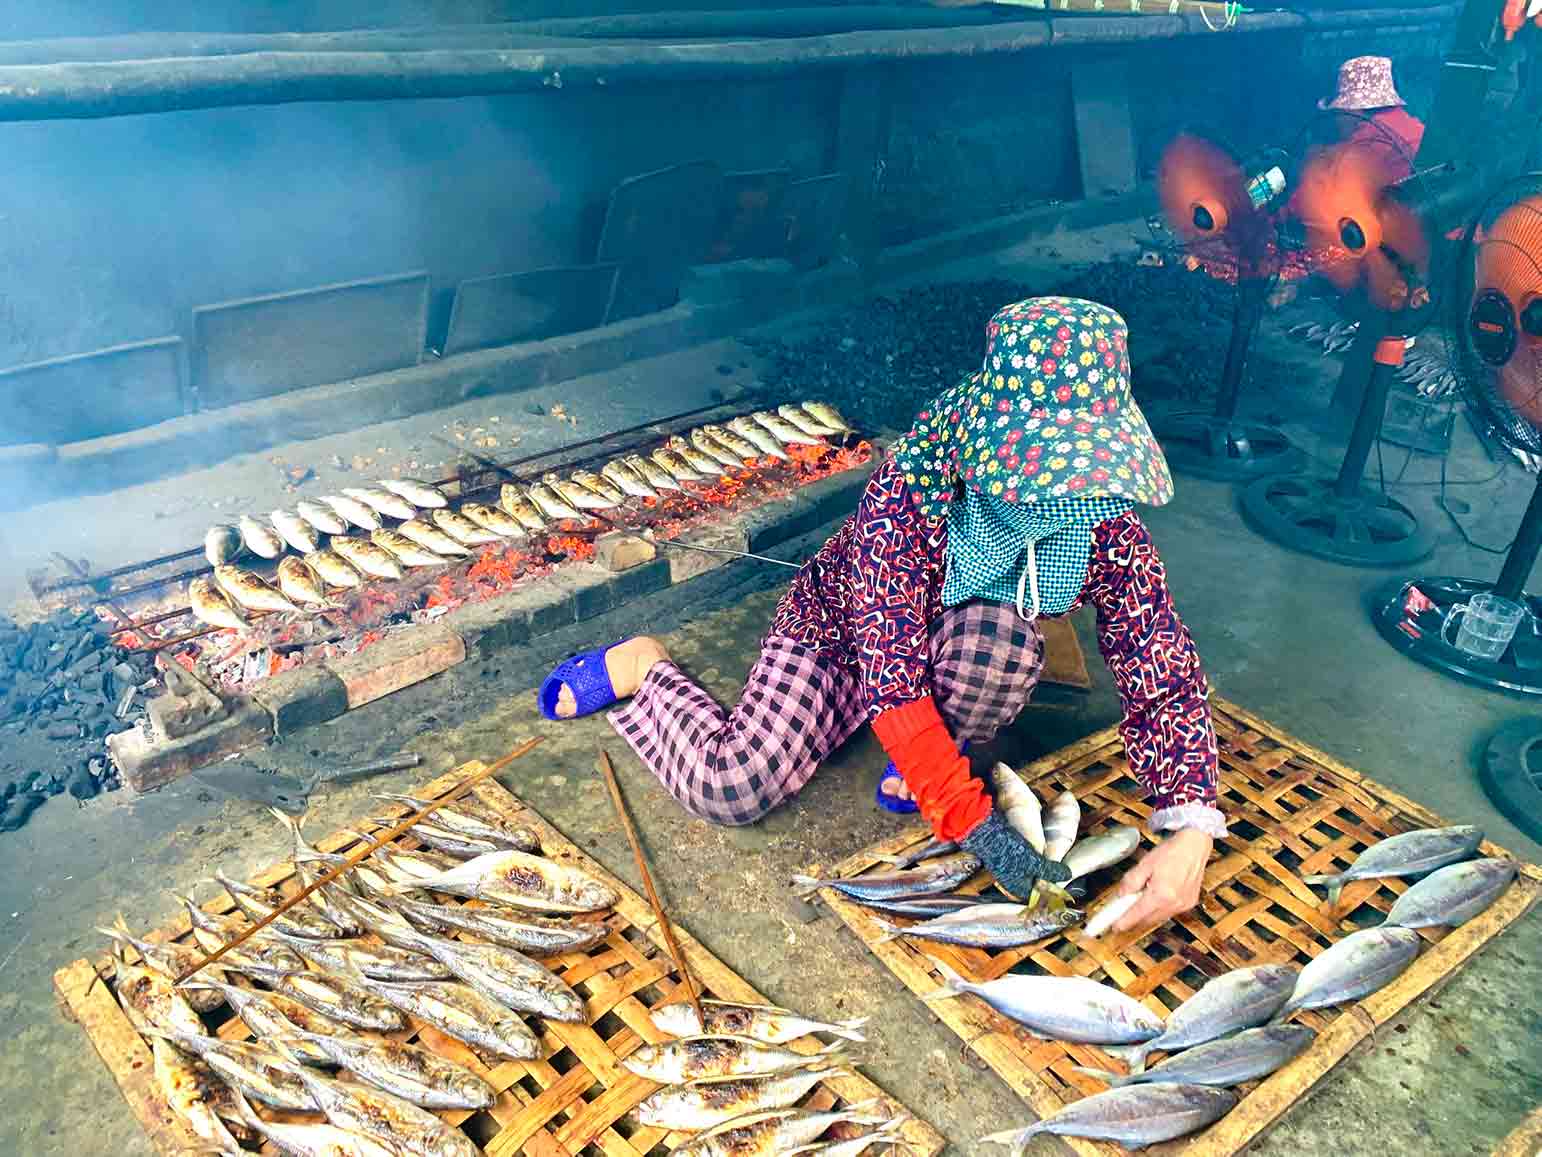 Nhiệt độ ngoài trời lên đến gần 40 độ C, các bà các chị vẫn phải ngồi bên bếp than nóng rực để nướng cá. Mỗi ngày, người nướng cá được chủ lò trả từ 150.000-250.000 đồng, thu nhập hàng tháng trên 5 triệu đồng/người